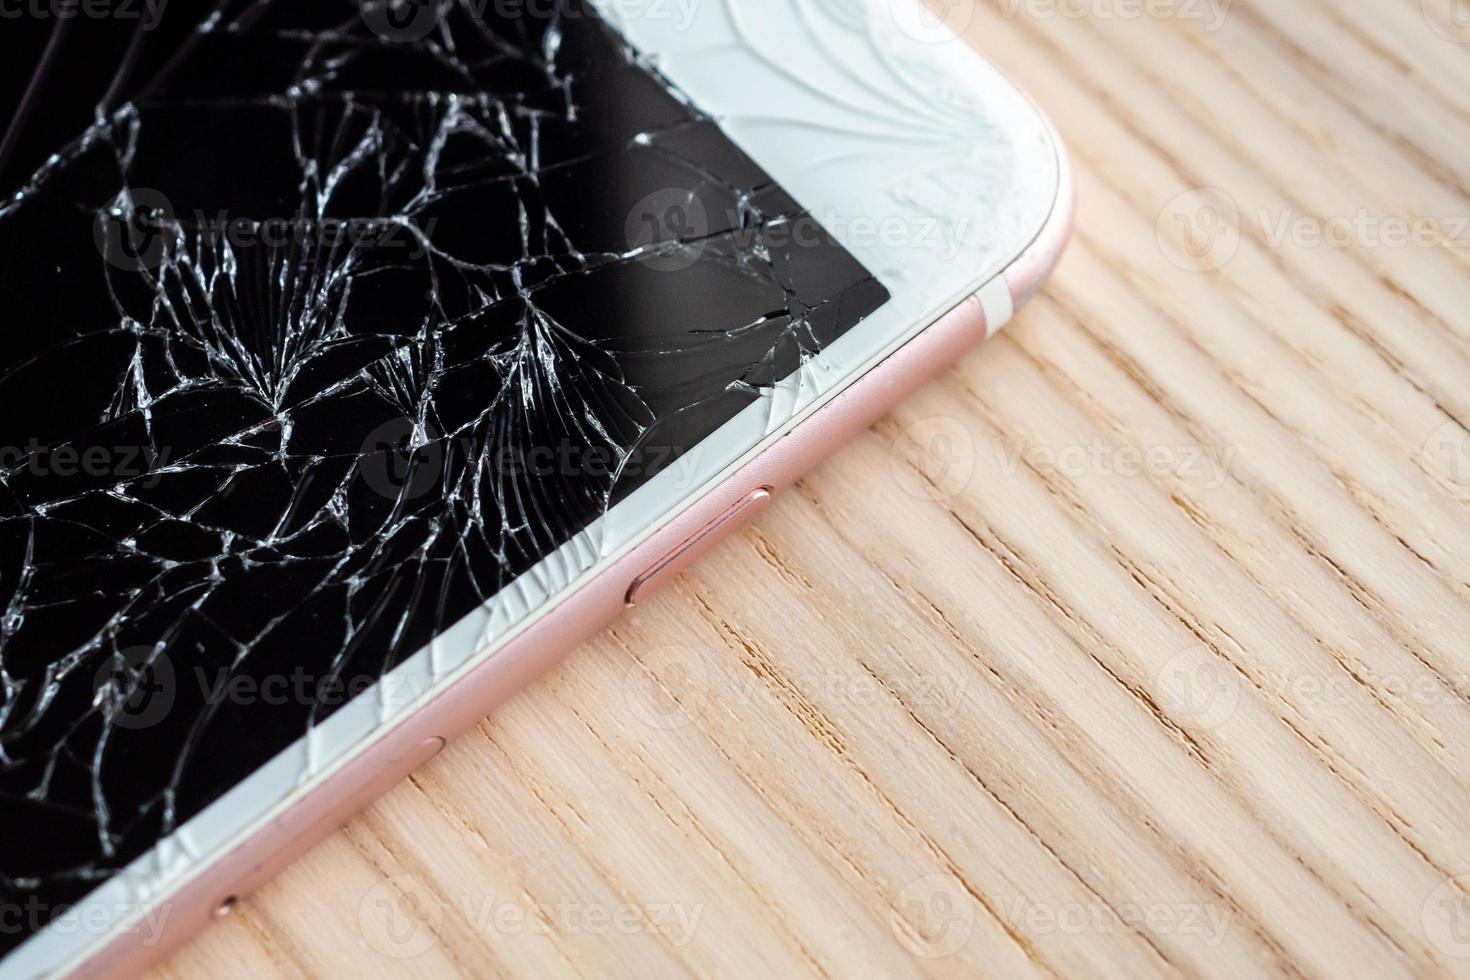 vidro quebrado da tela do celular em fundo de madeira foto